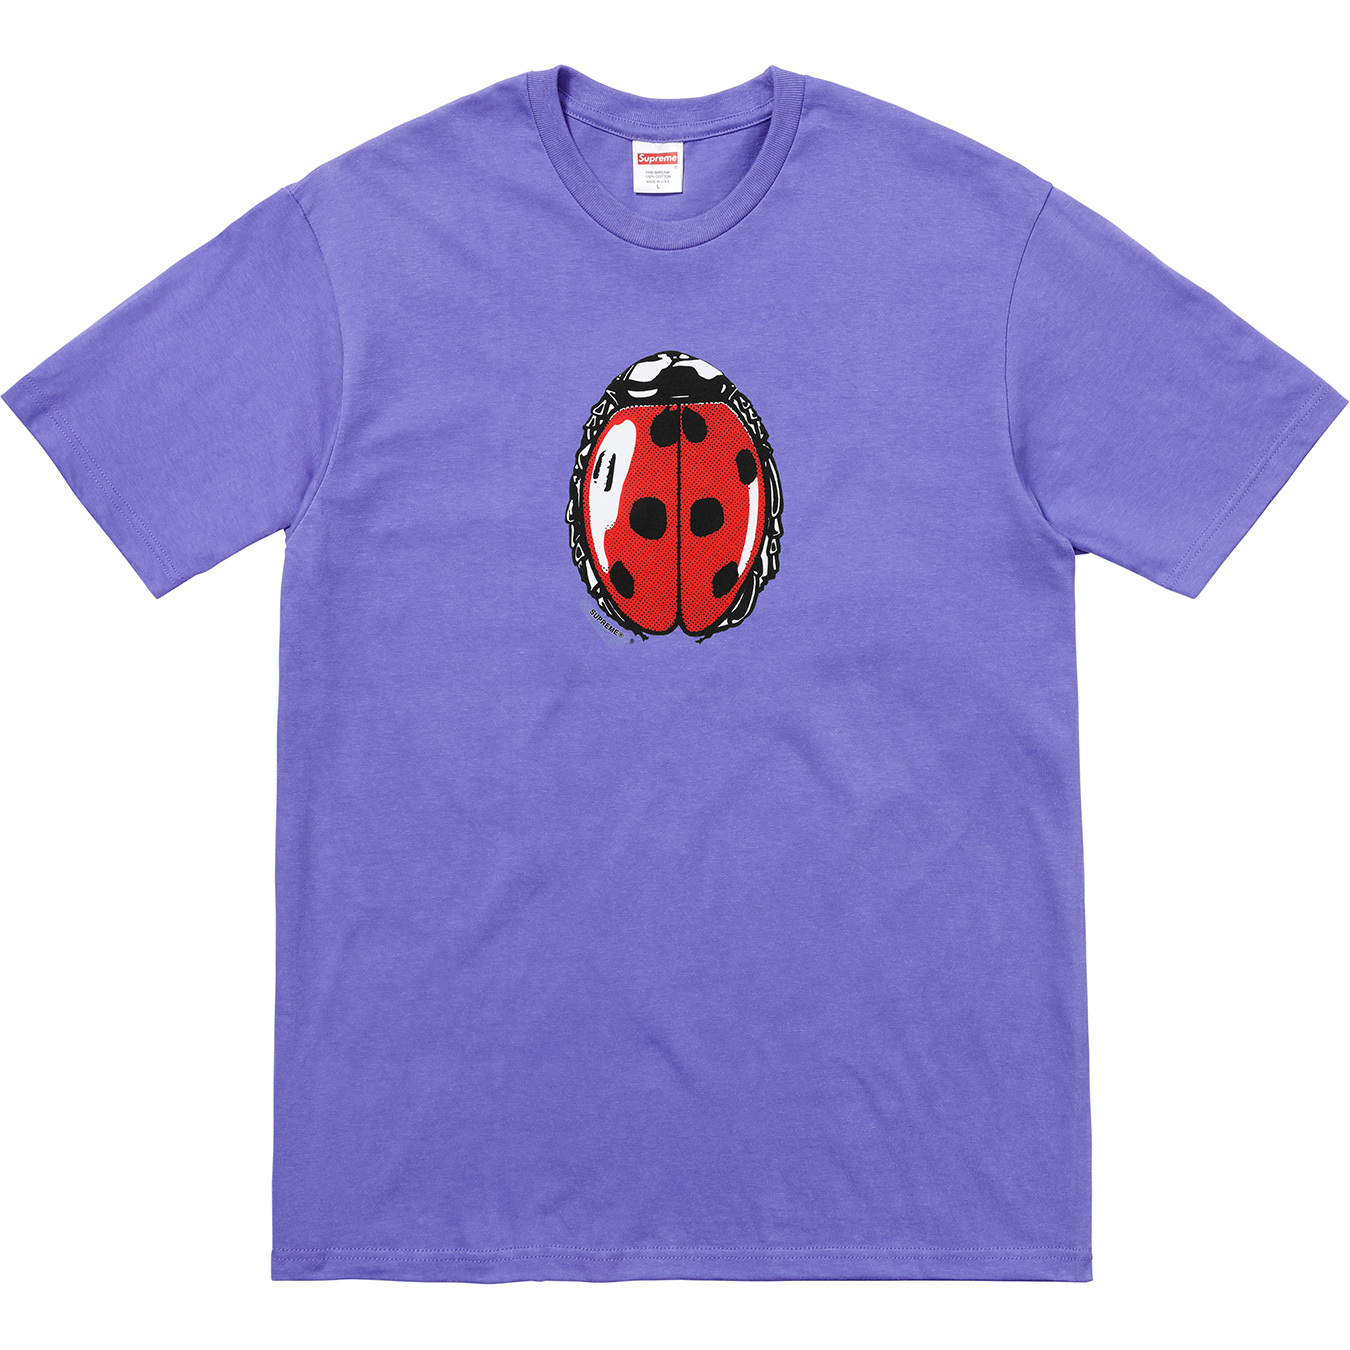 Supreme Ladybug Tee Light Purple Men's - SS18 - US